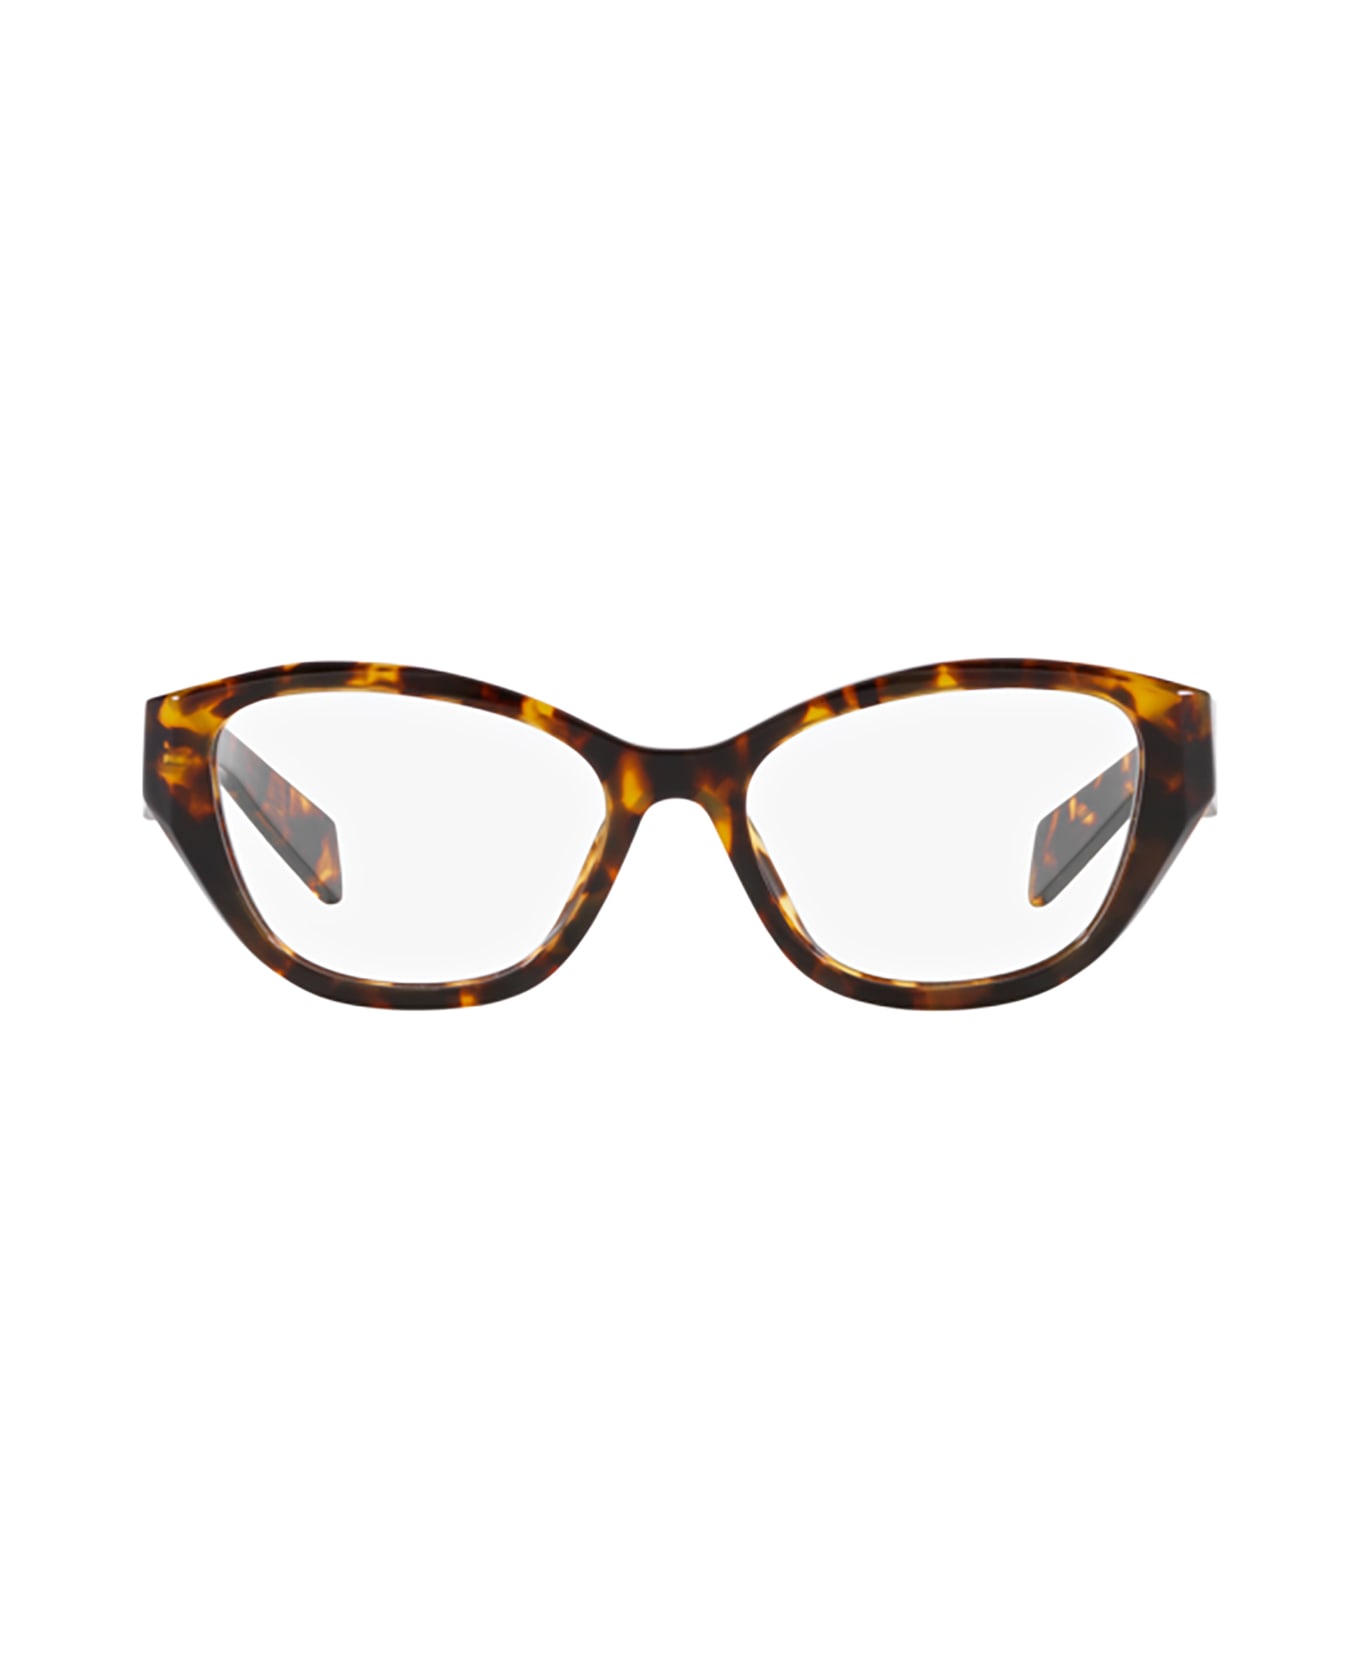 Prada Eyewear Pr 21zv Honey Tortoise Glasses - Honey Tortoise